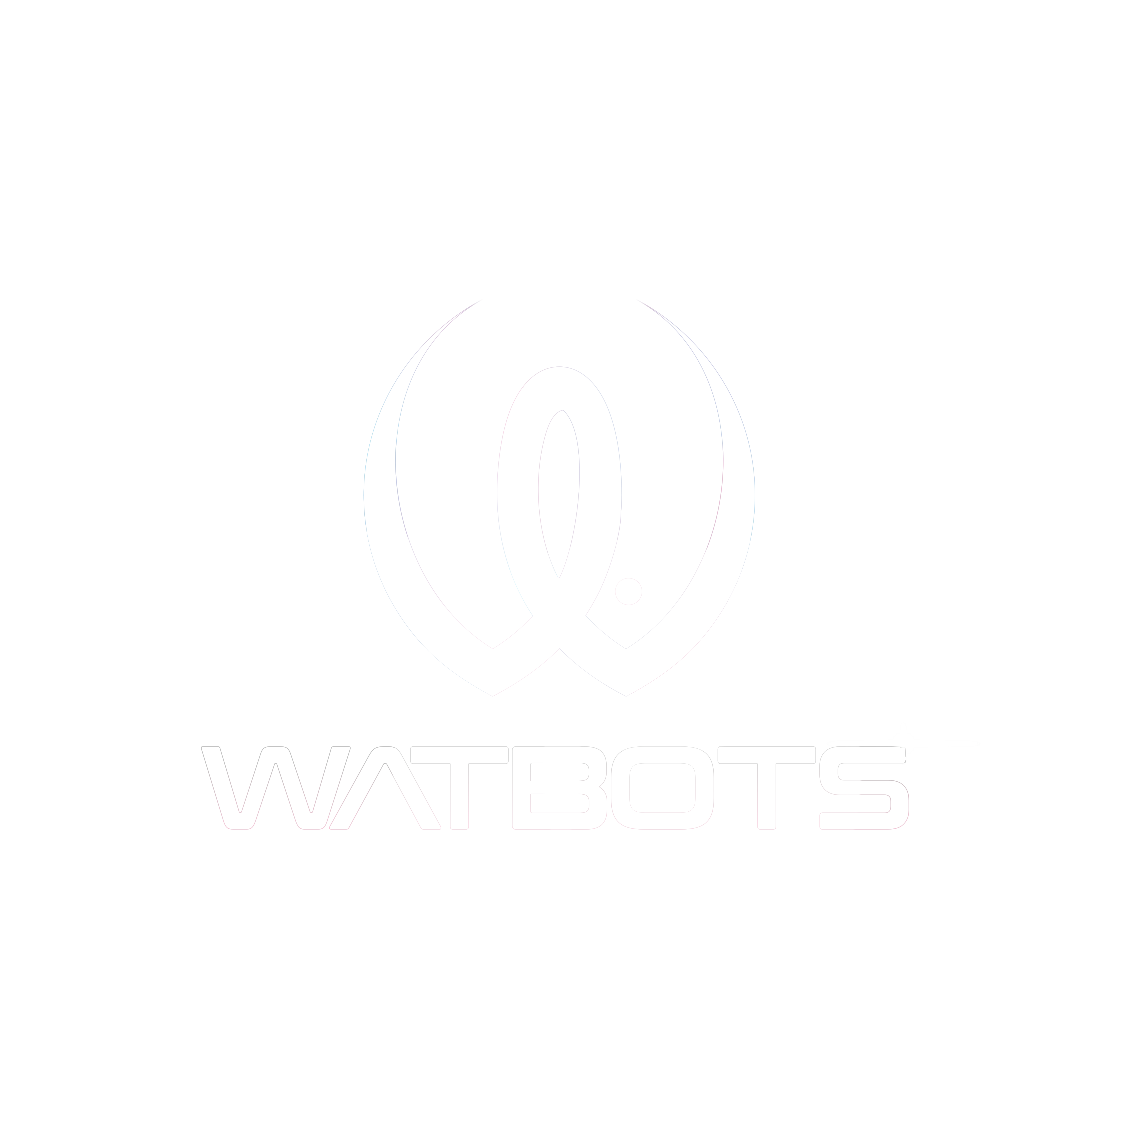 Watbots